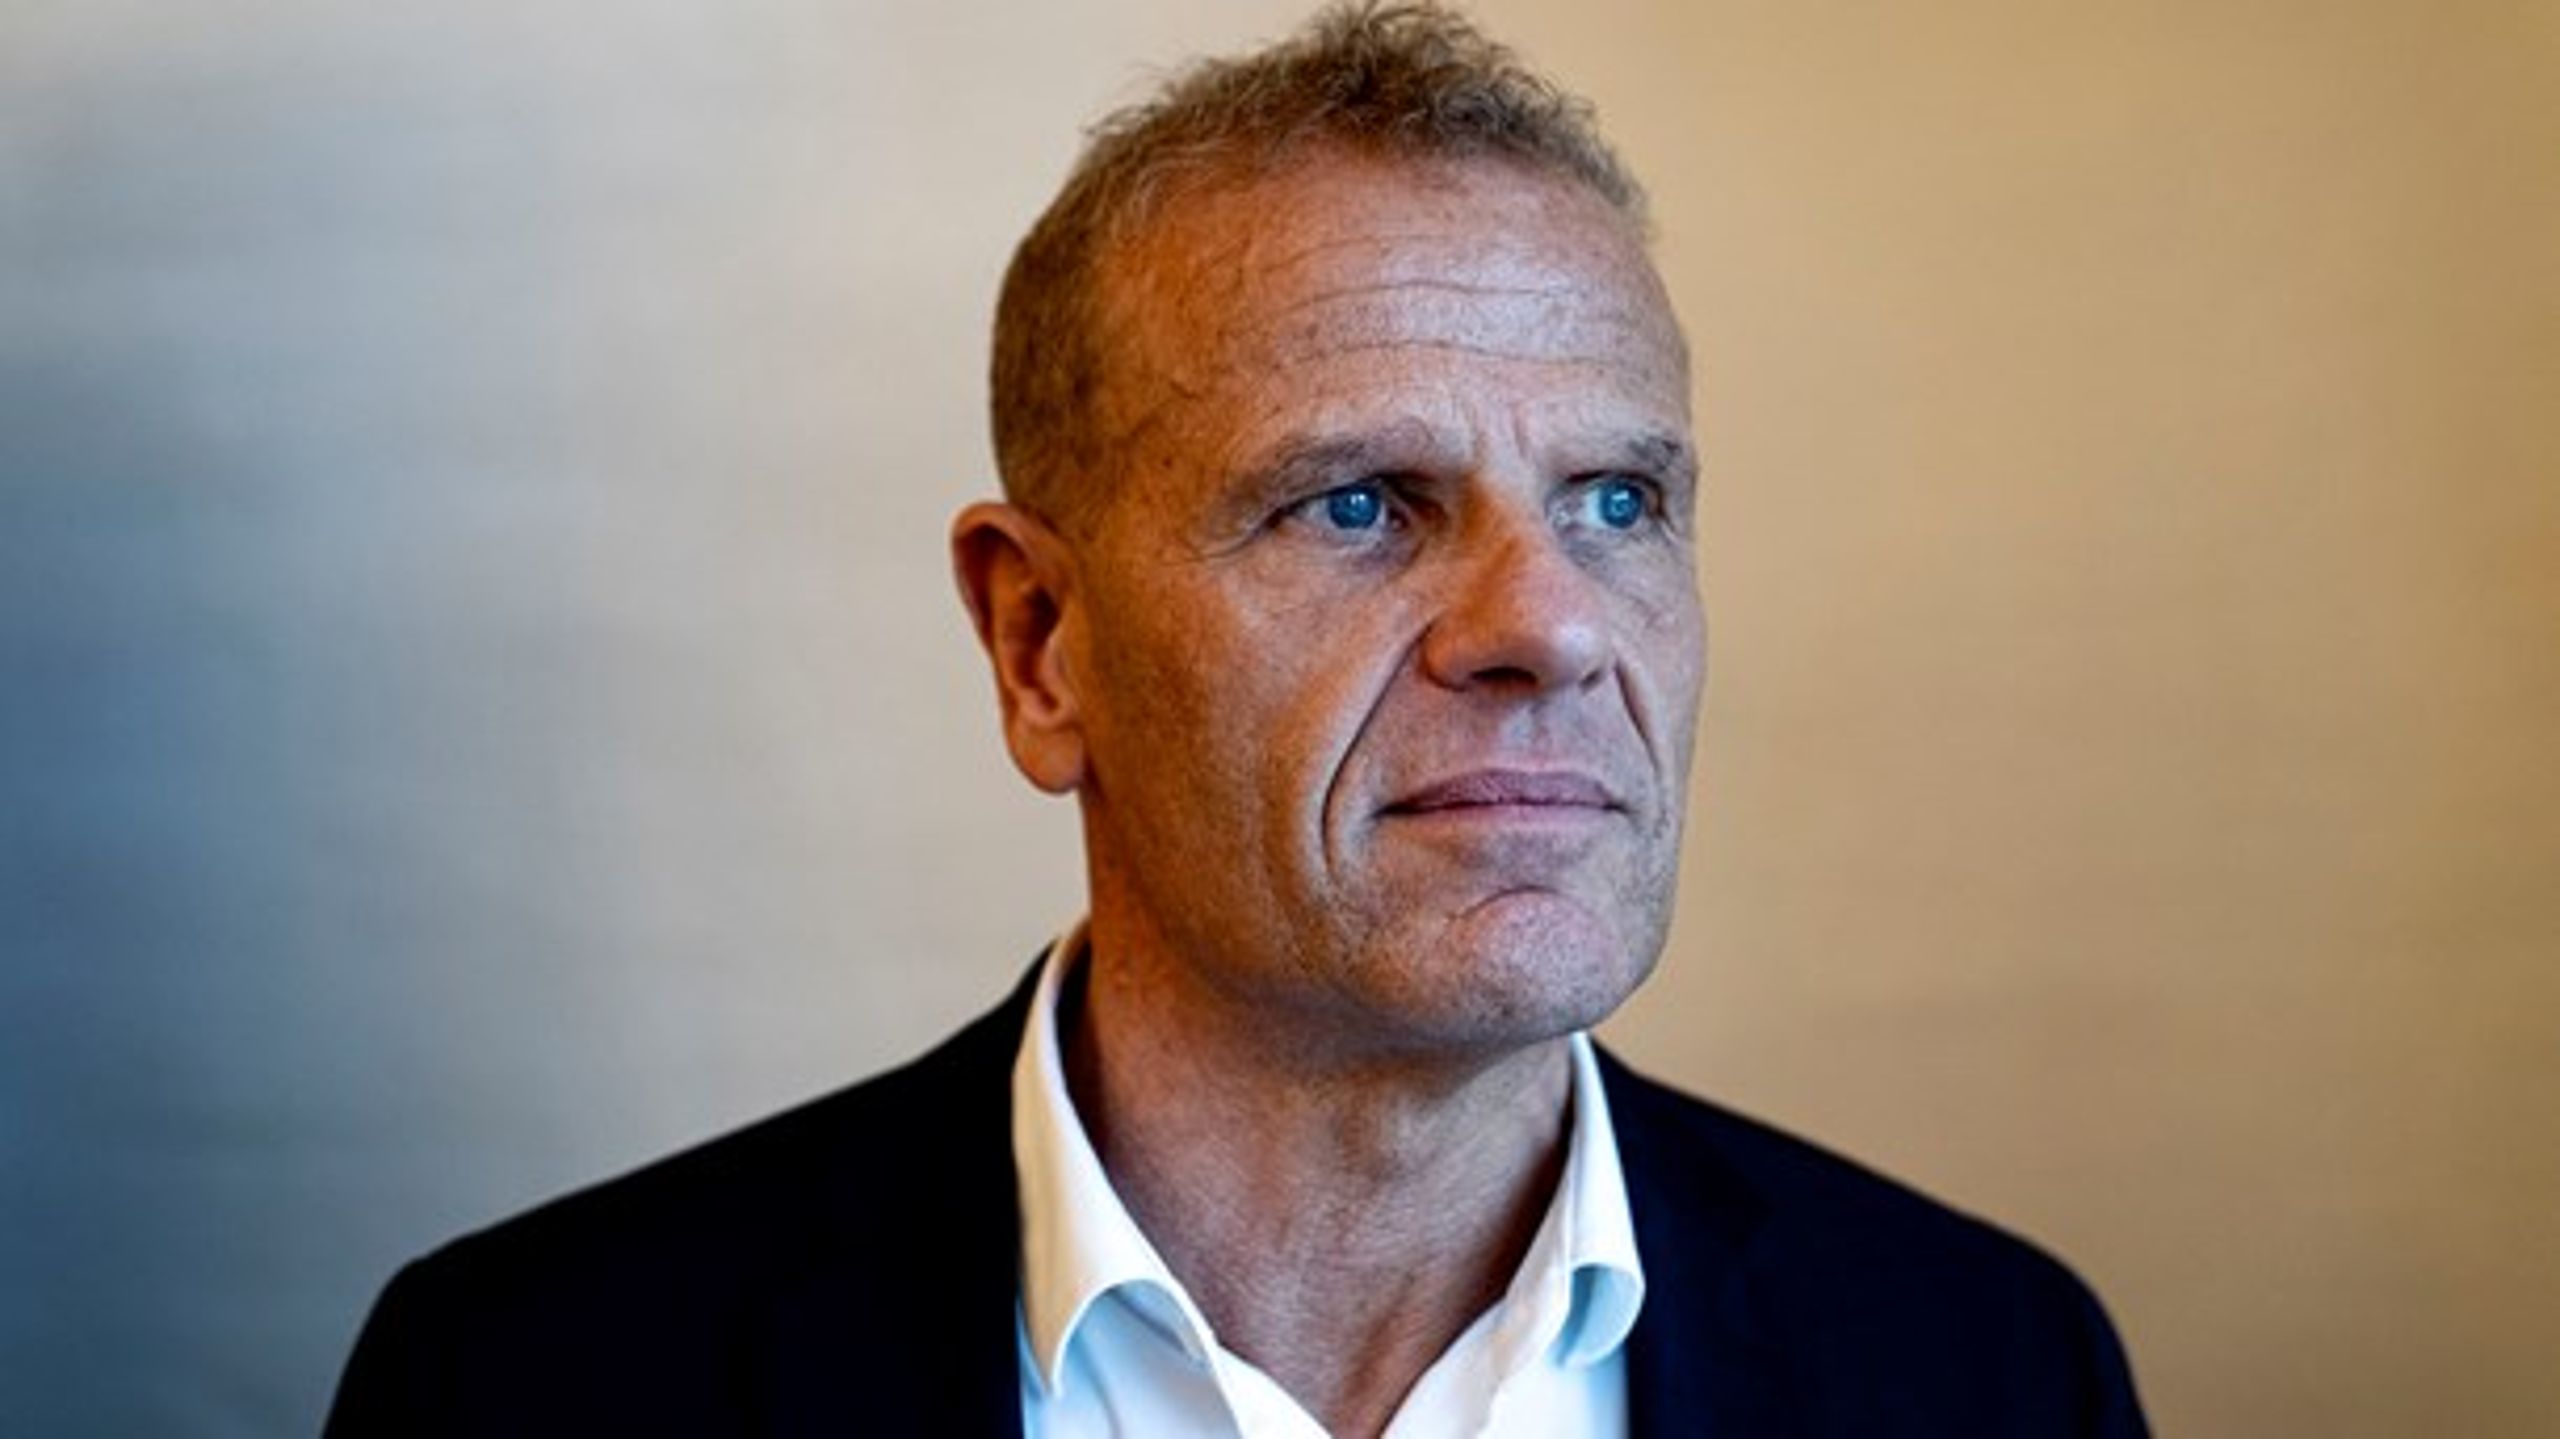 Chefen for Forsvarets Efterretningstjeneste, Lars Findsen, blev hjemsendt den 21. august. Få dage før erklærede medarbejderne i tjenesten deres fulde tillid til Lars Findsen.